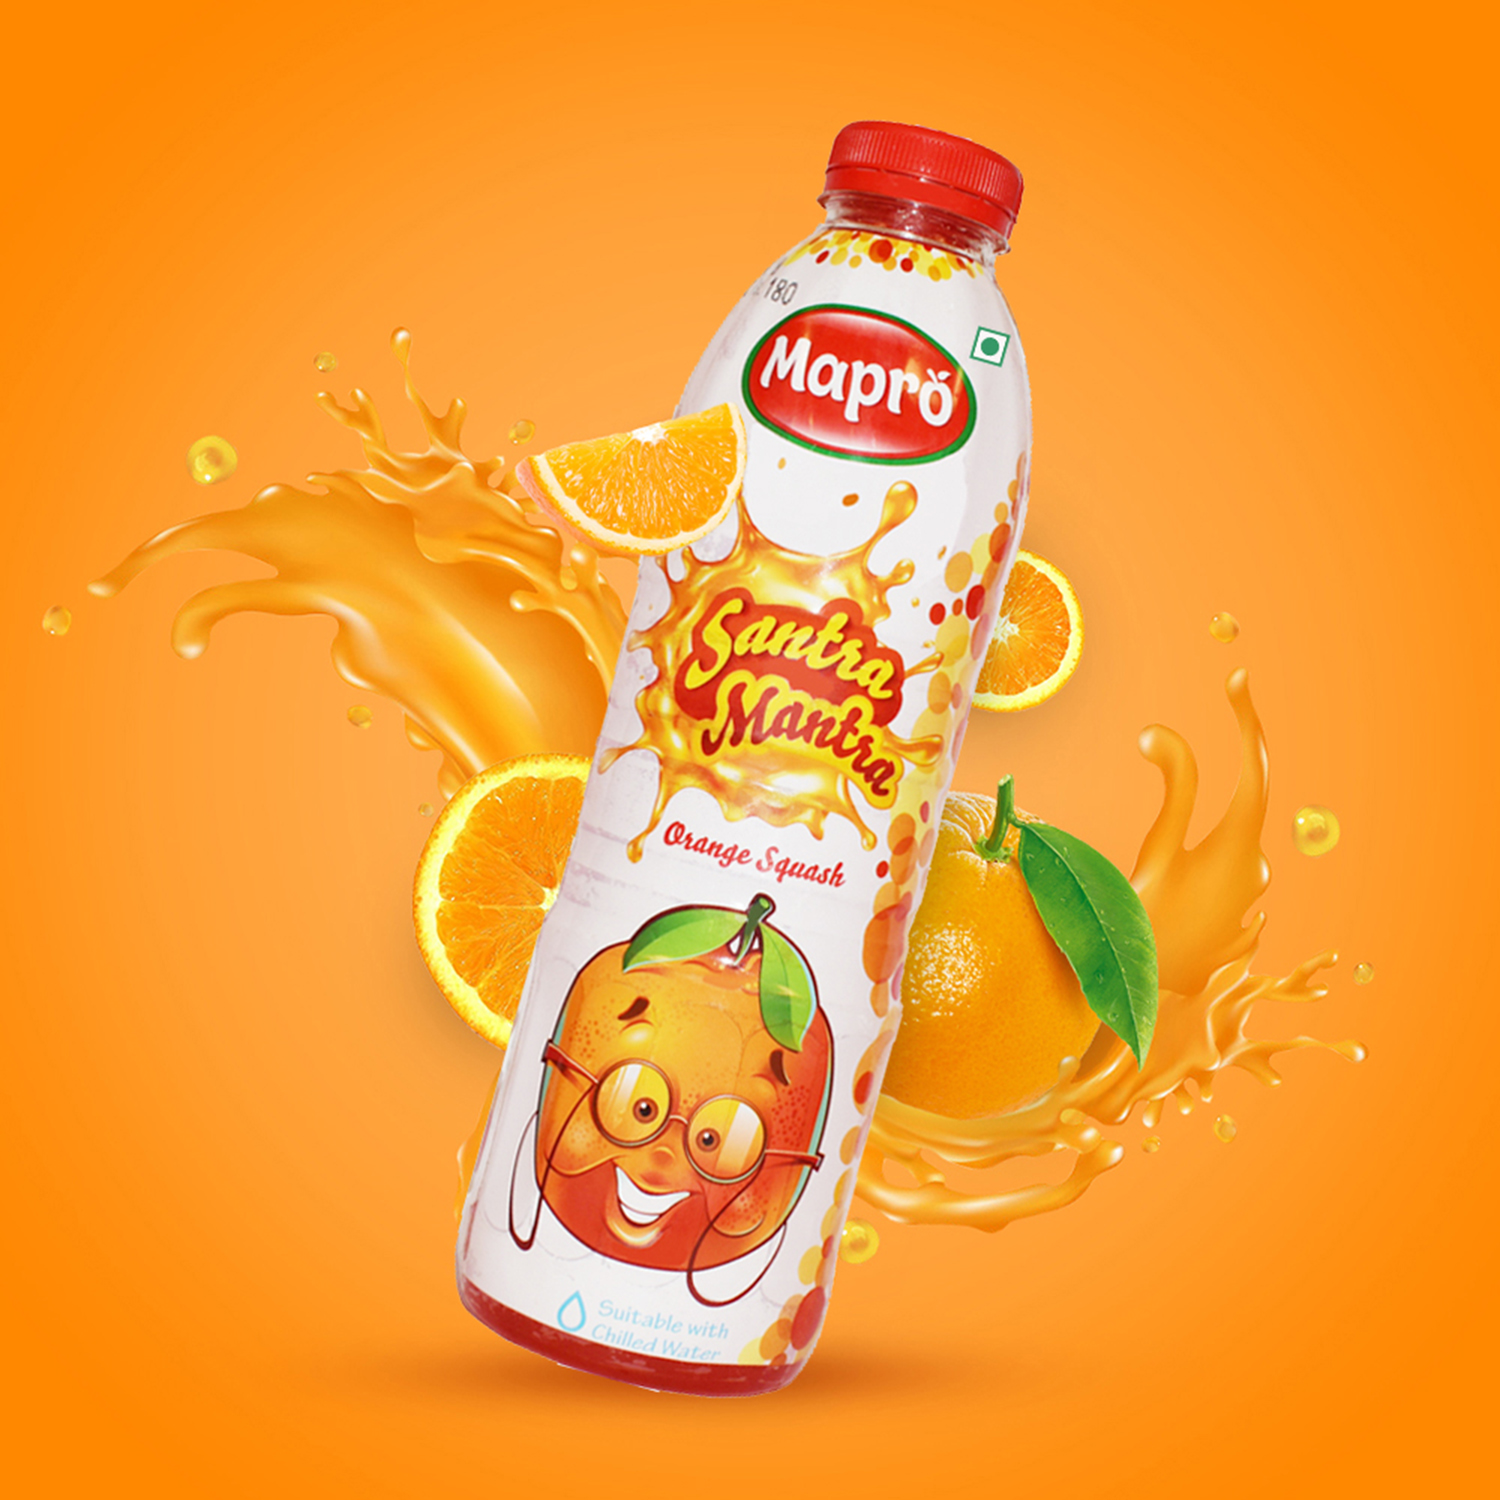 Santra Mantra Orange Squash 